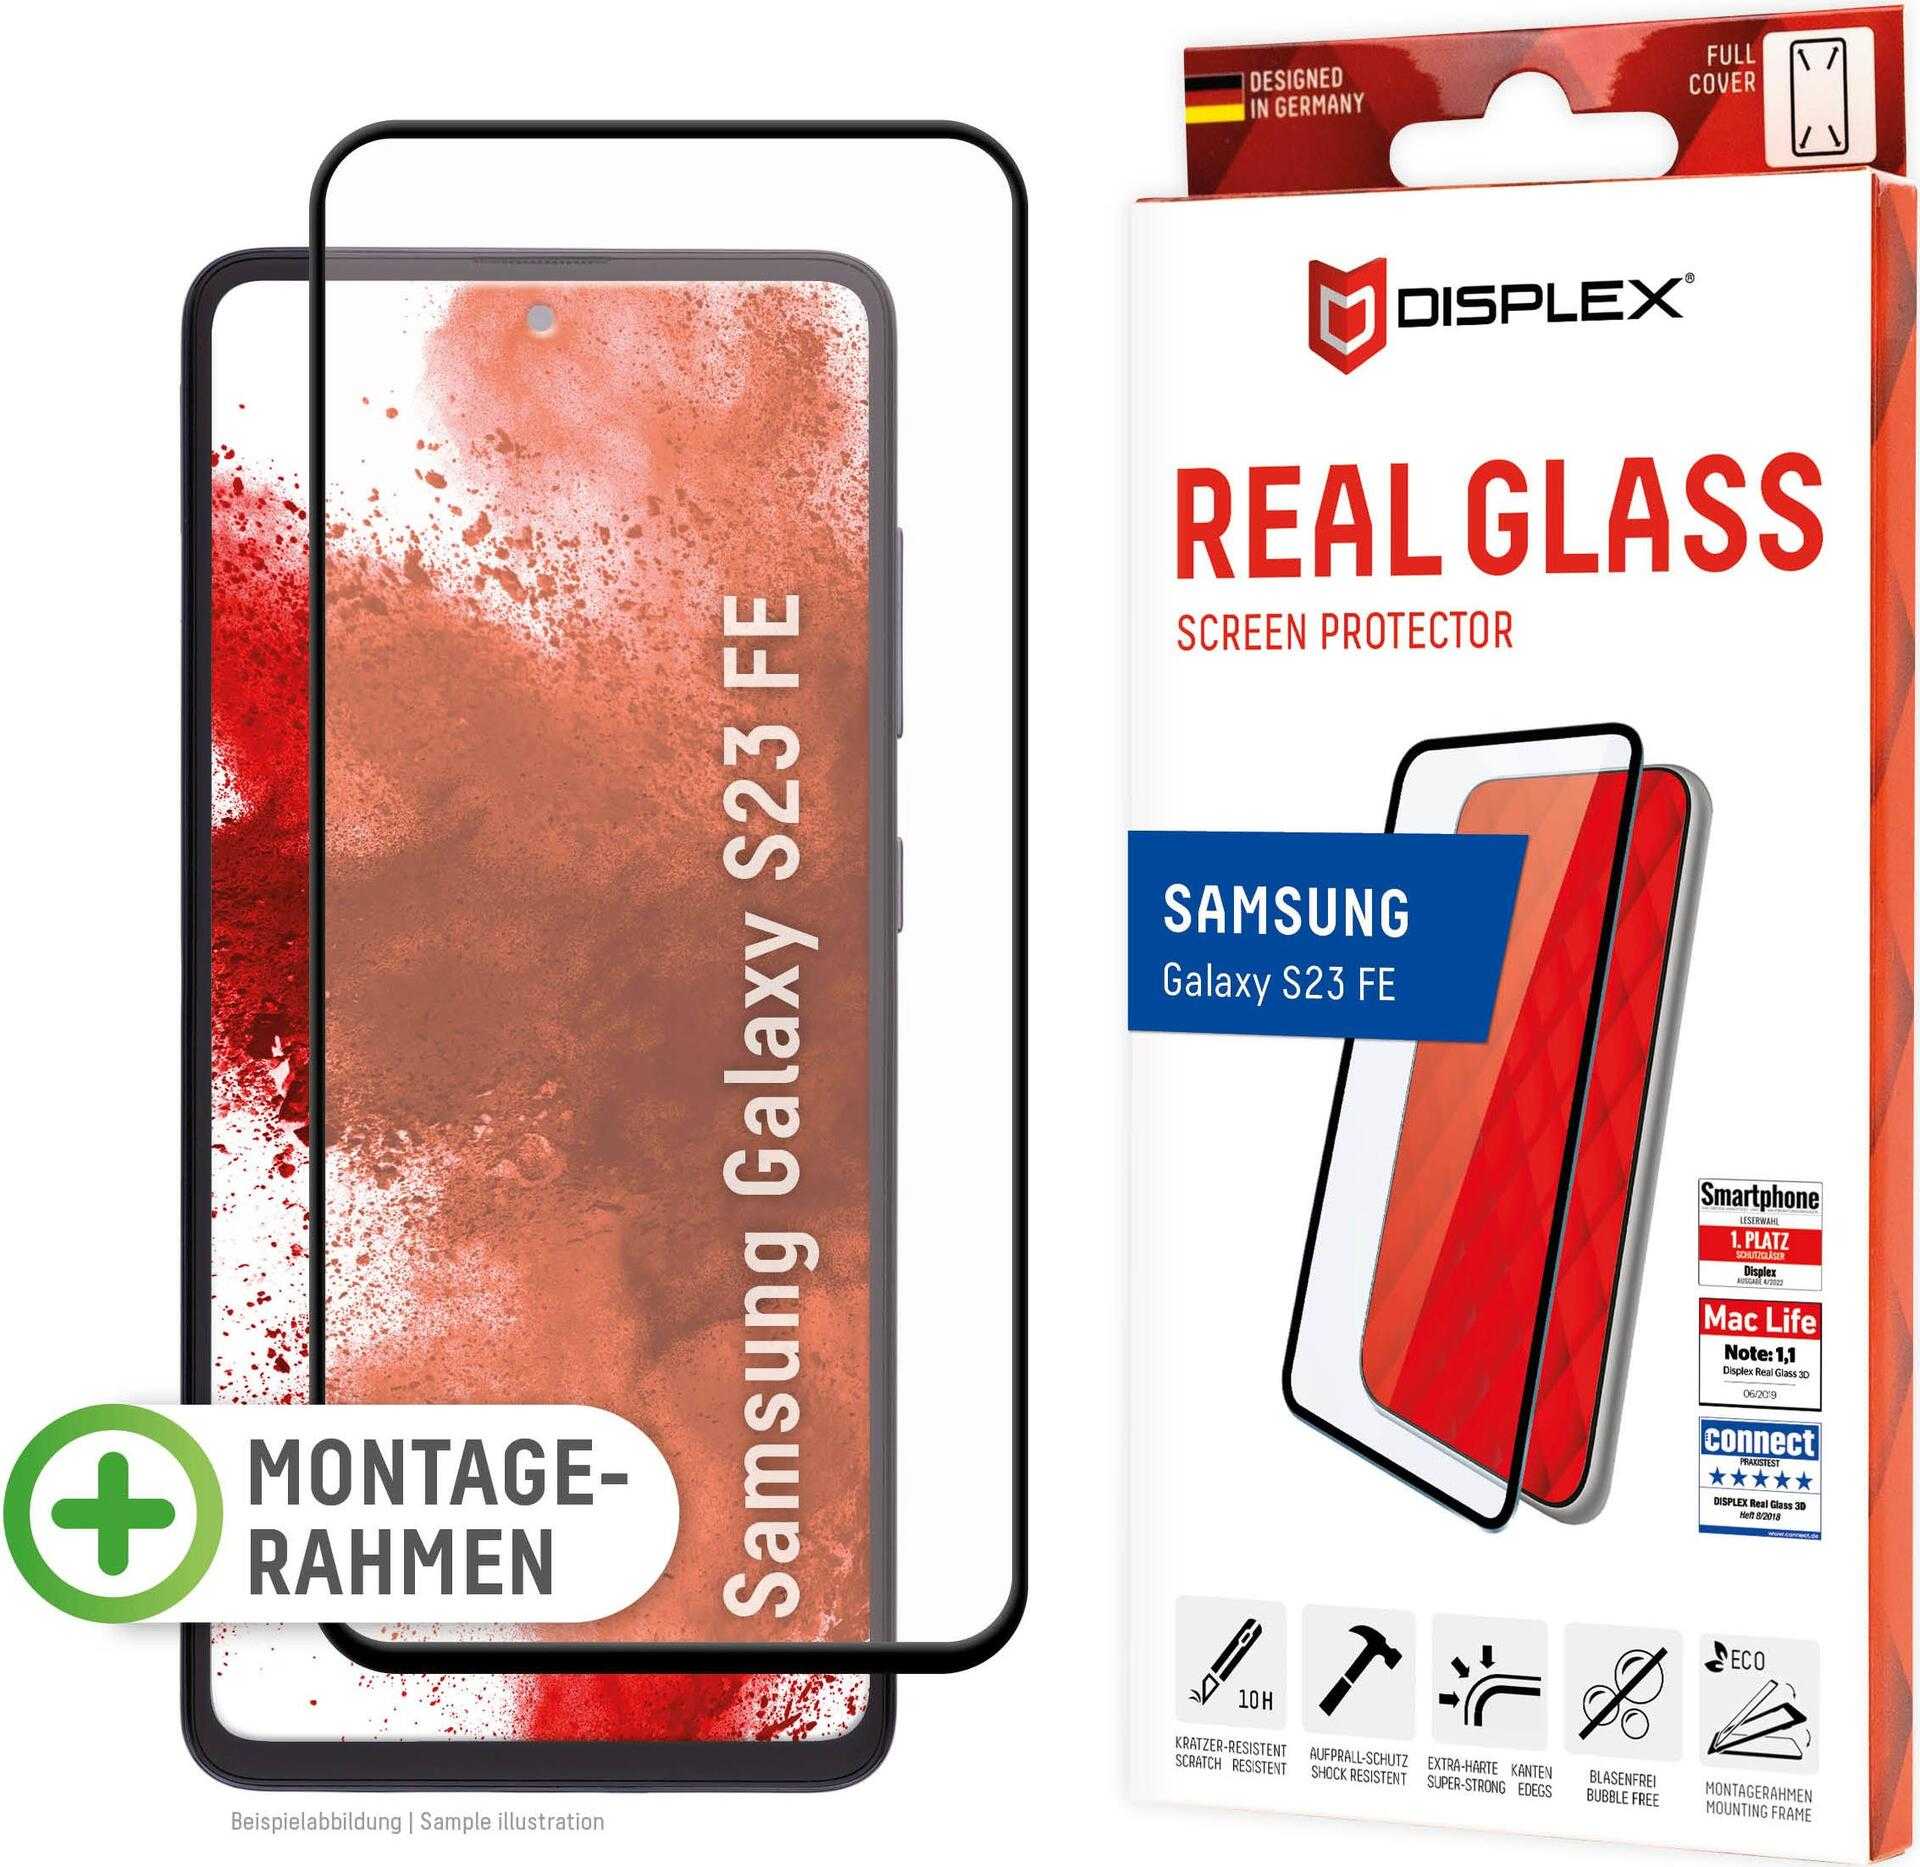 Displex Panzerglas (10H) für Samsung Galaxy S23 FE - Eco-Montagerahmen - Full Cover - Samsung - Galaxy S23 FE - Trockene Anwendung - Staubresistent - Schlagfest - Kratzresistent - Schockresistent - Schwarz - Transparent - 1 Stück(e) (01875)